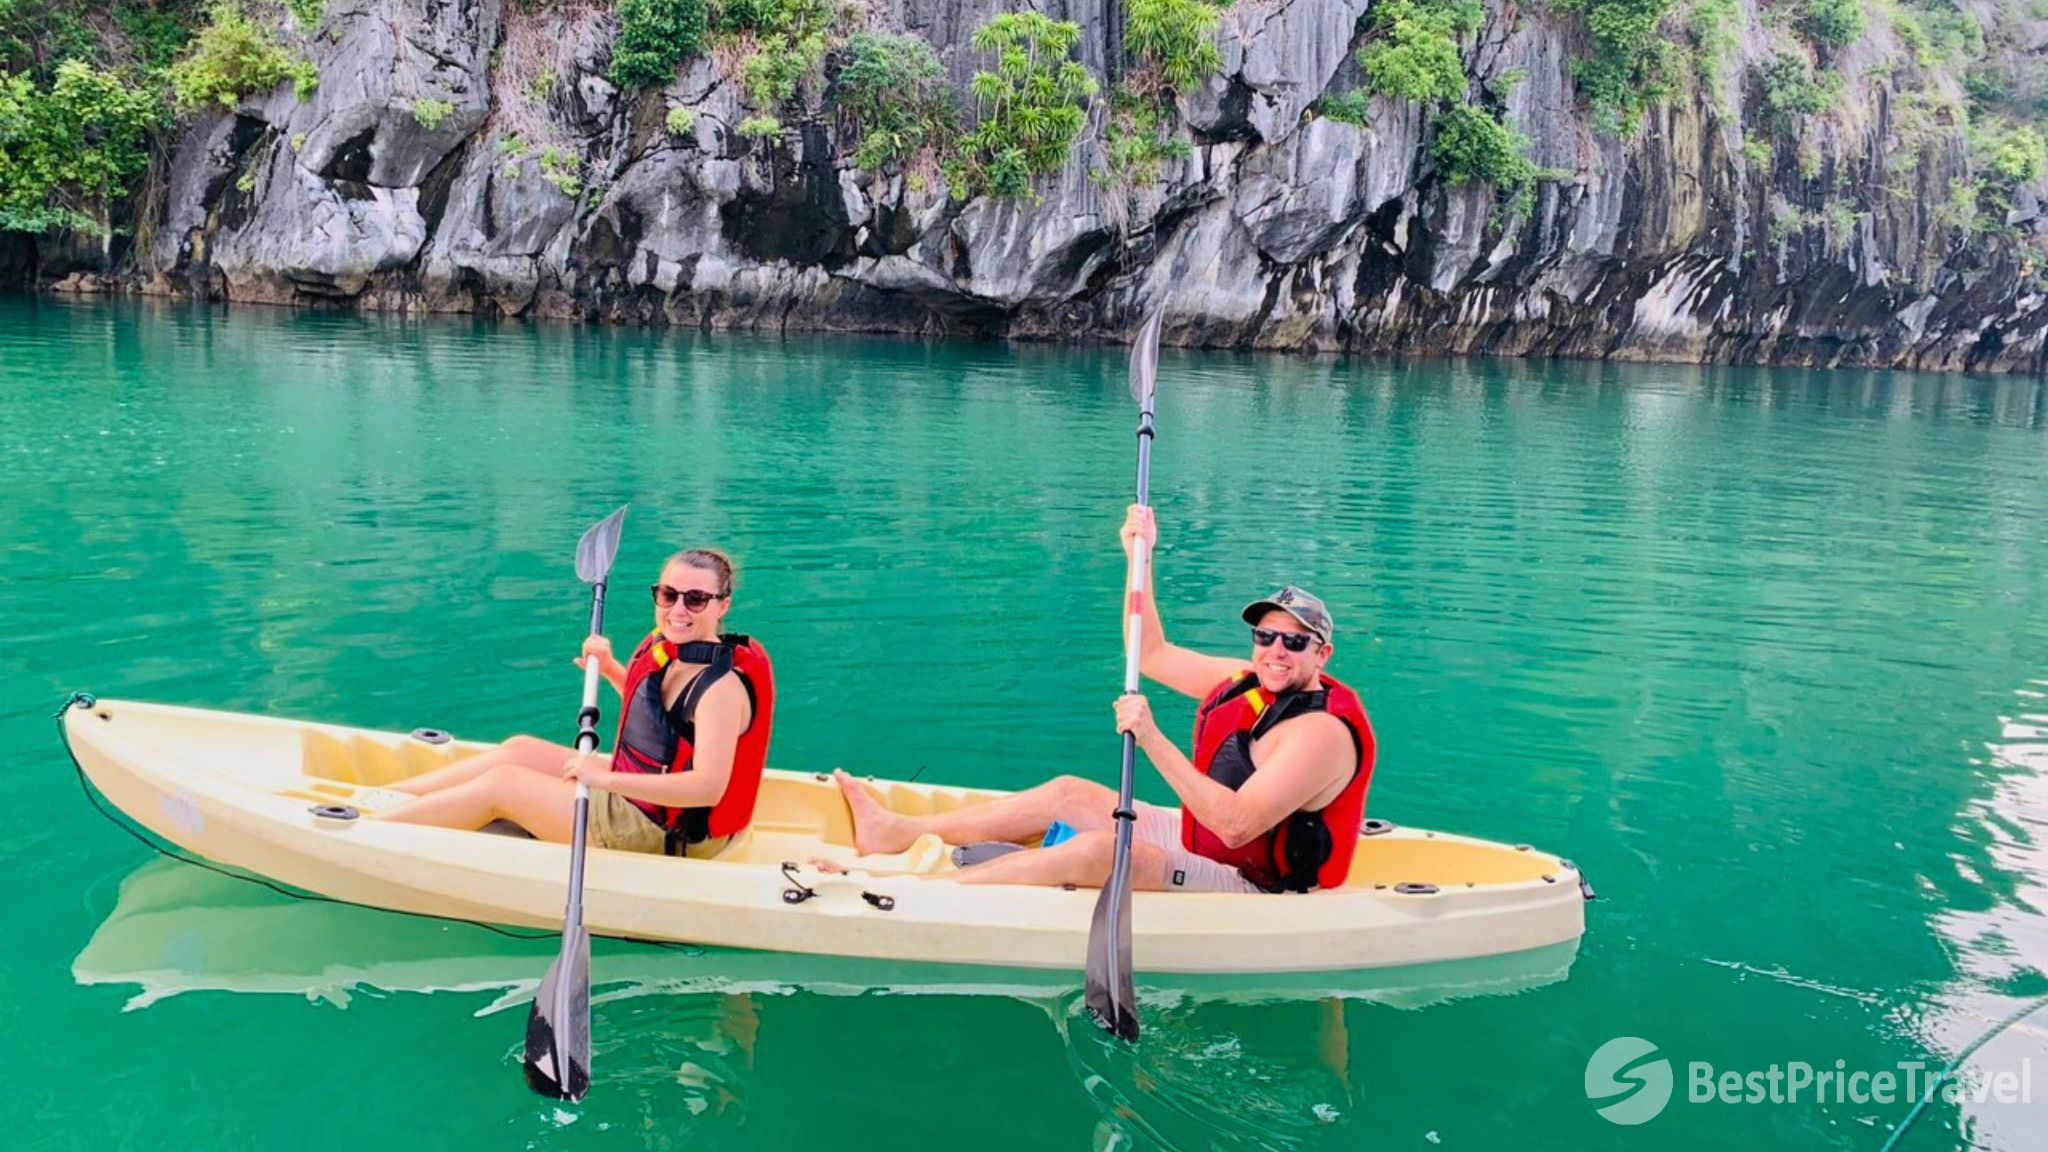 Day 9 Kayaking On The Emerald Water Of Lan Ha Bay